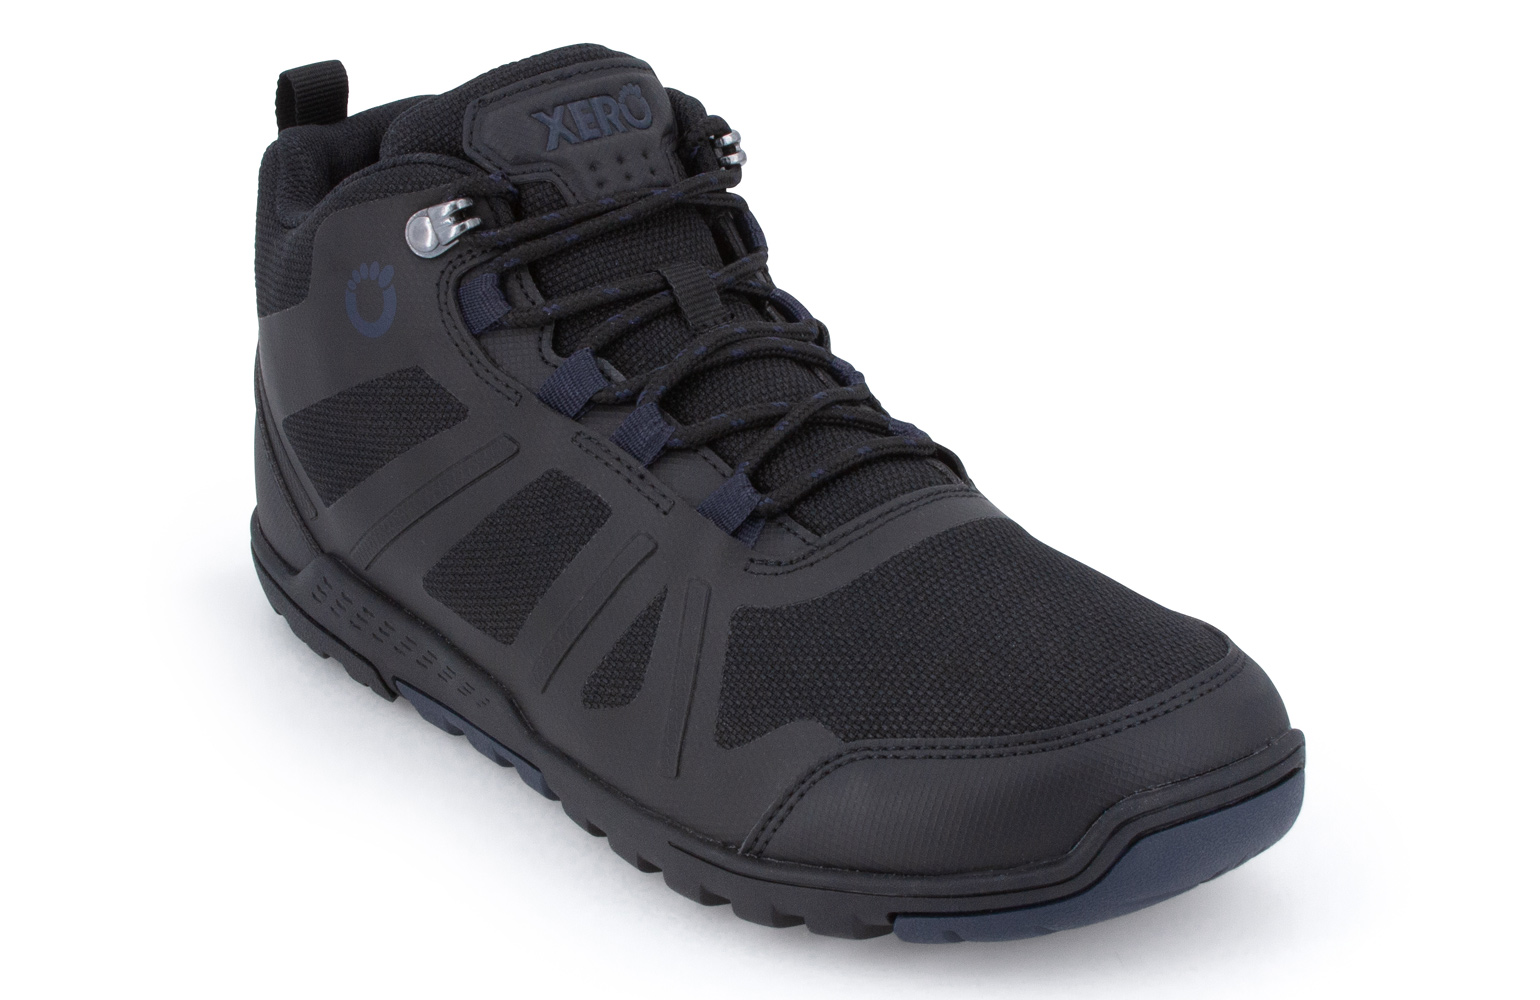 Xero DayLite Hiker Fusion Black meeste matkasaapad Täiskasvanute barefoot jalatsid - HellyK - Kvaliteetsed lasteriided, villariided, barefoot jalatsid